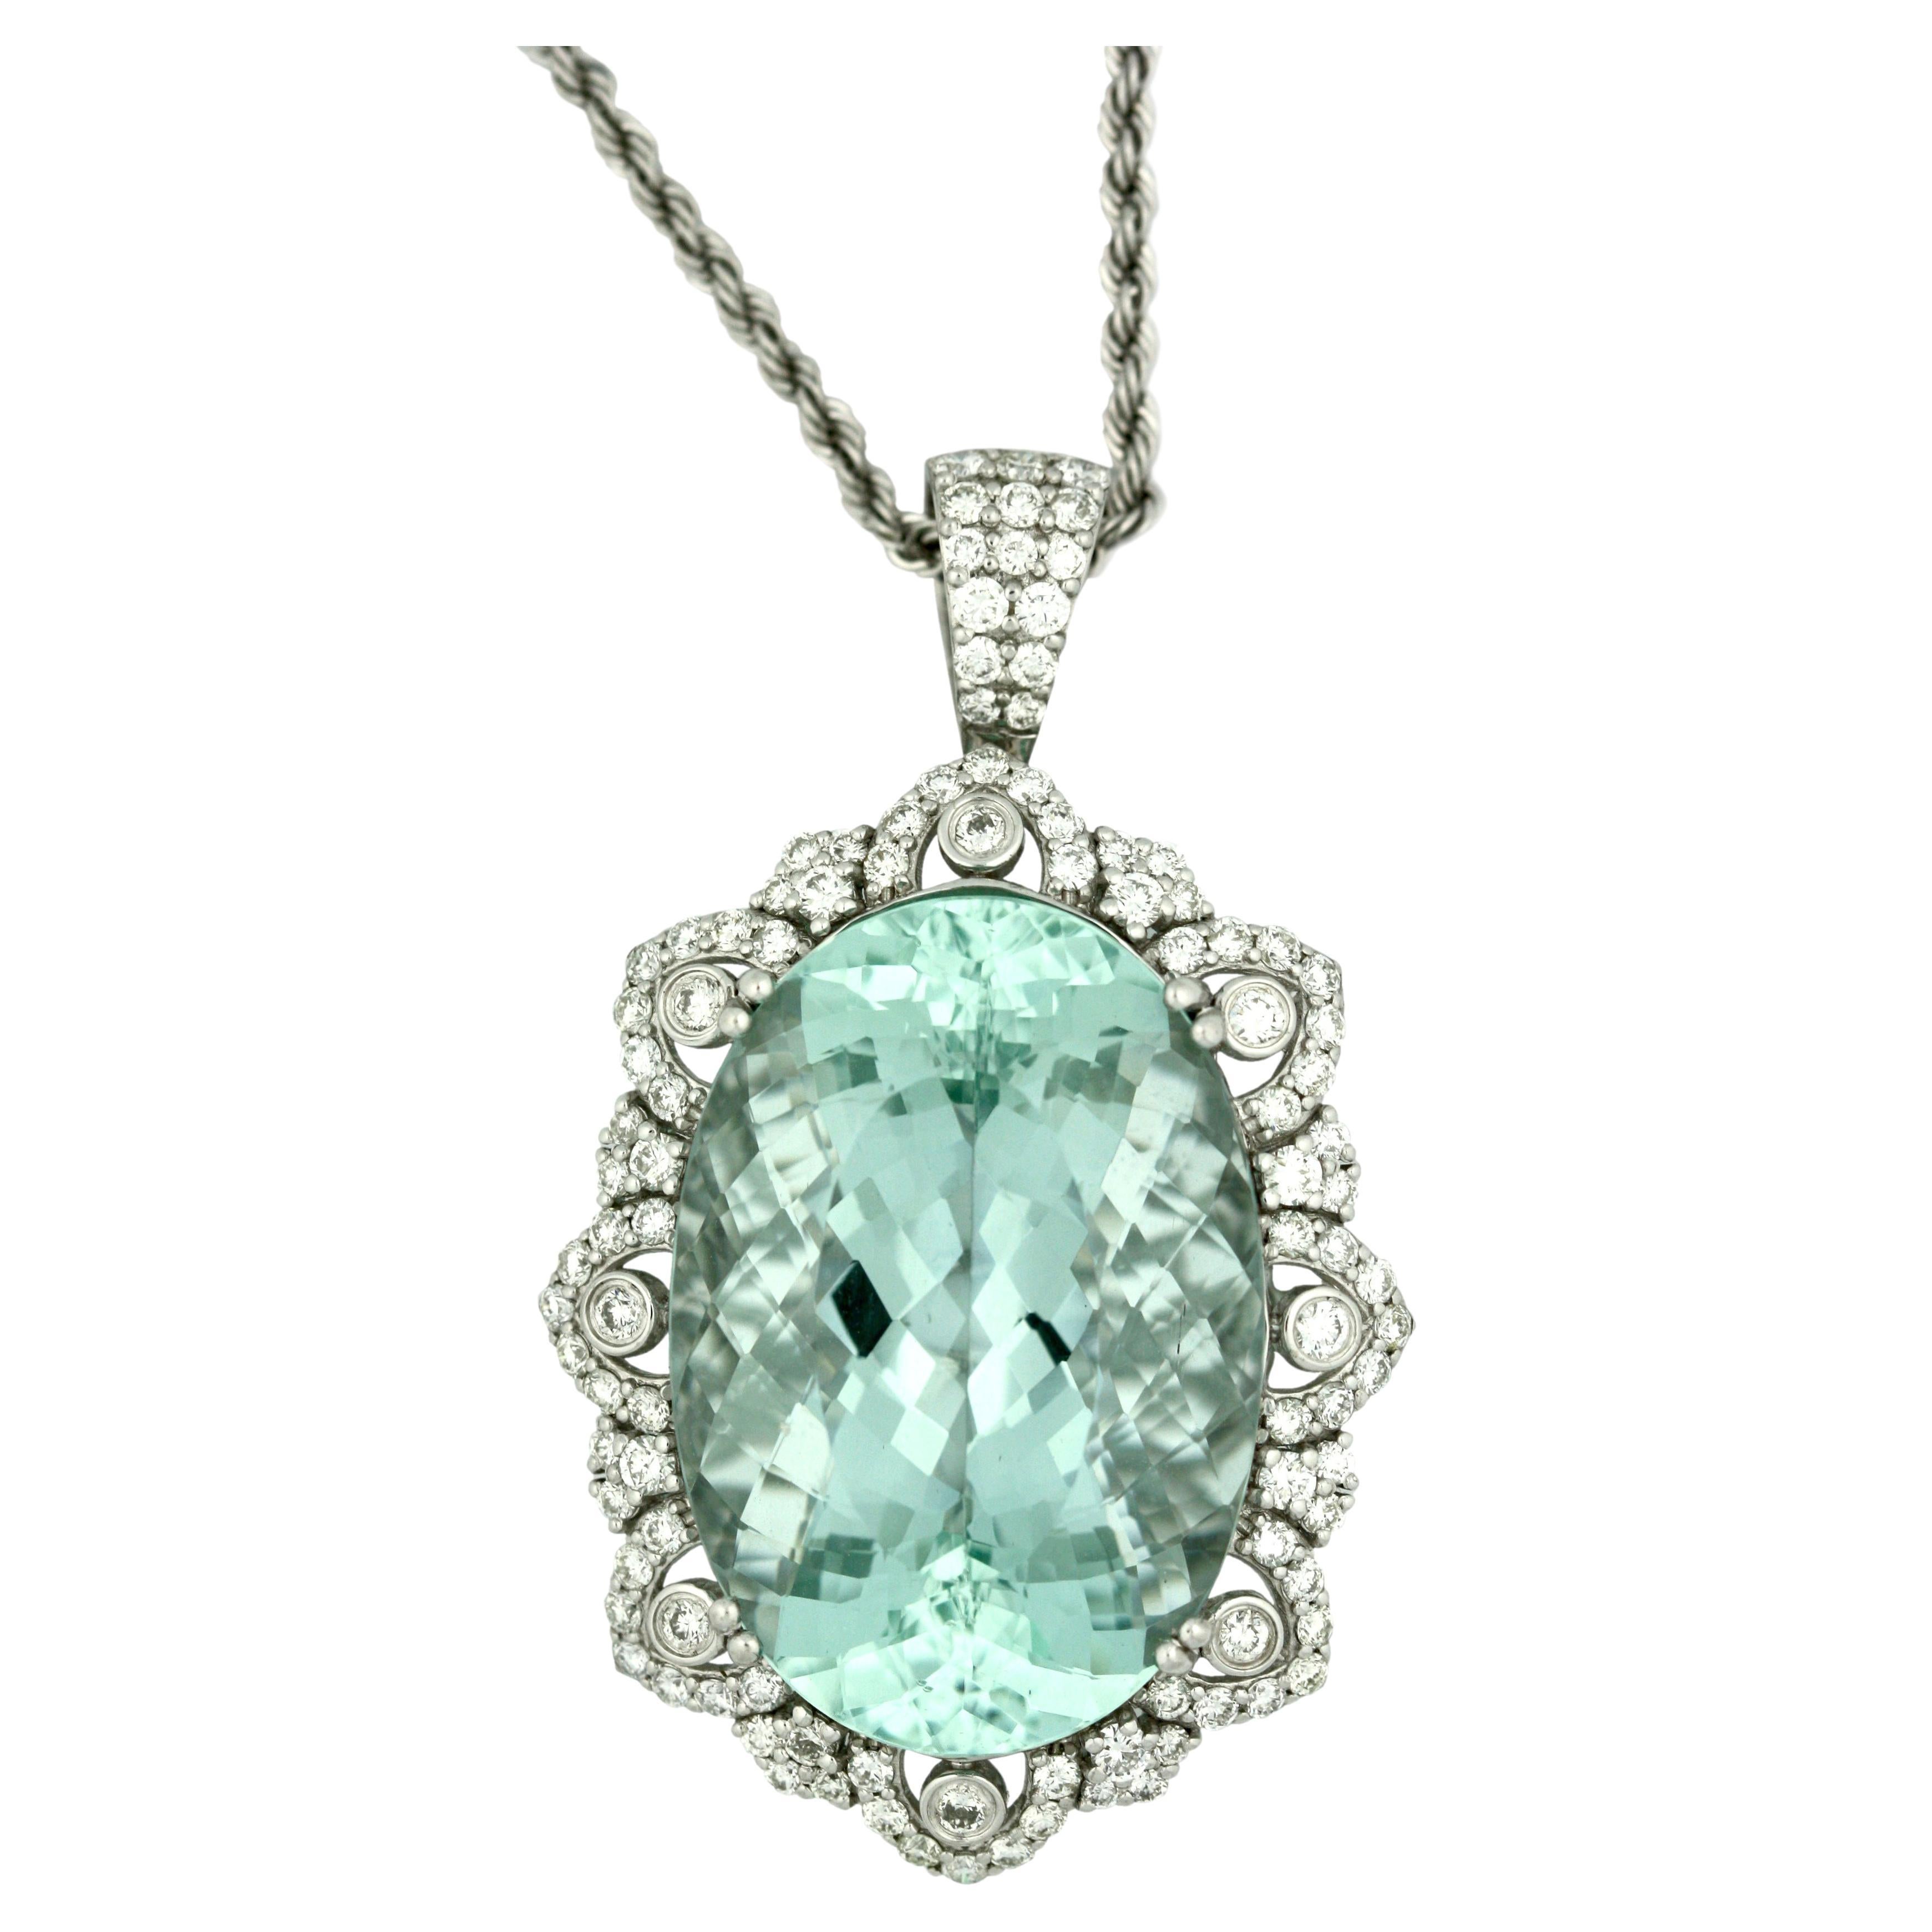 Platinum, Aquamarine and Diamond Pendant-Necklace